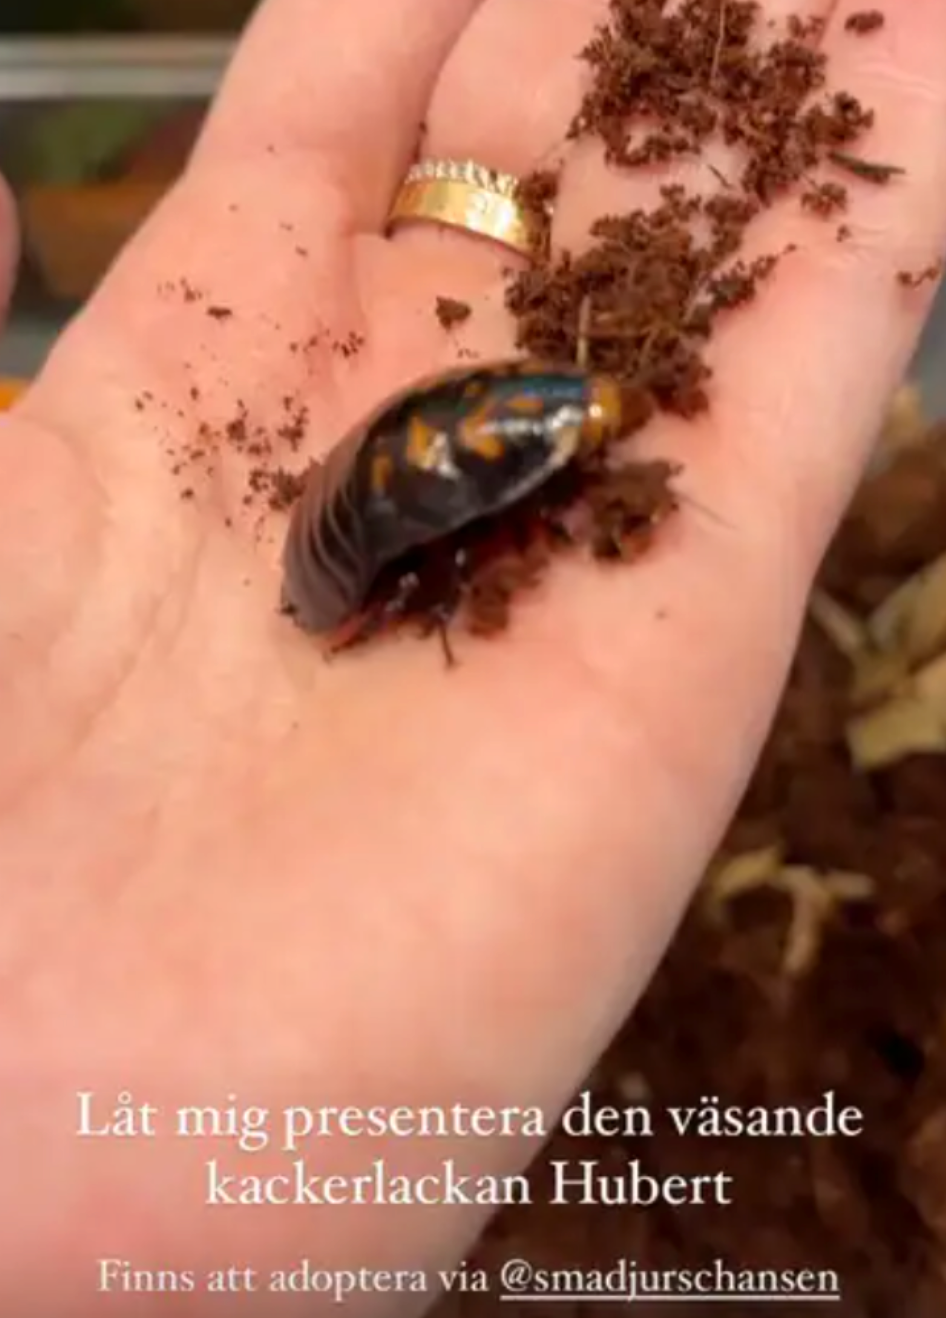 Therése Lindgrens Instagram story om kackerlackan Hubert.